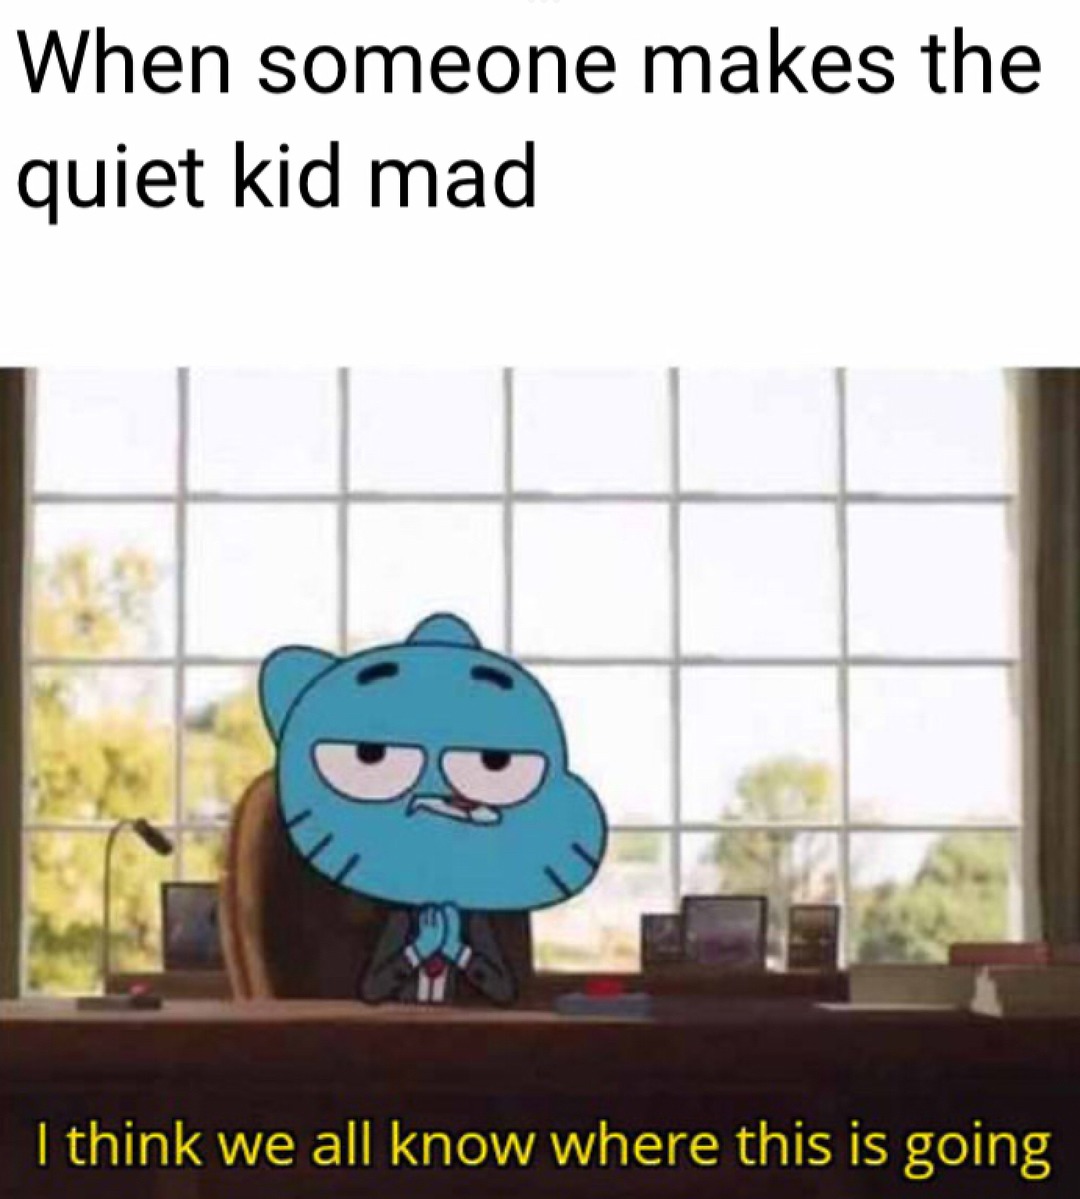 The mad quiet kid - meme